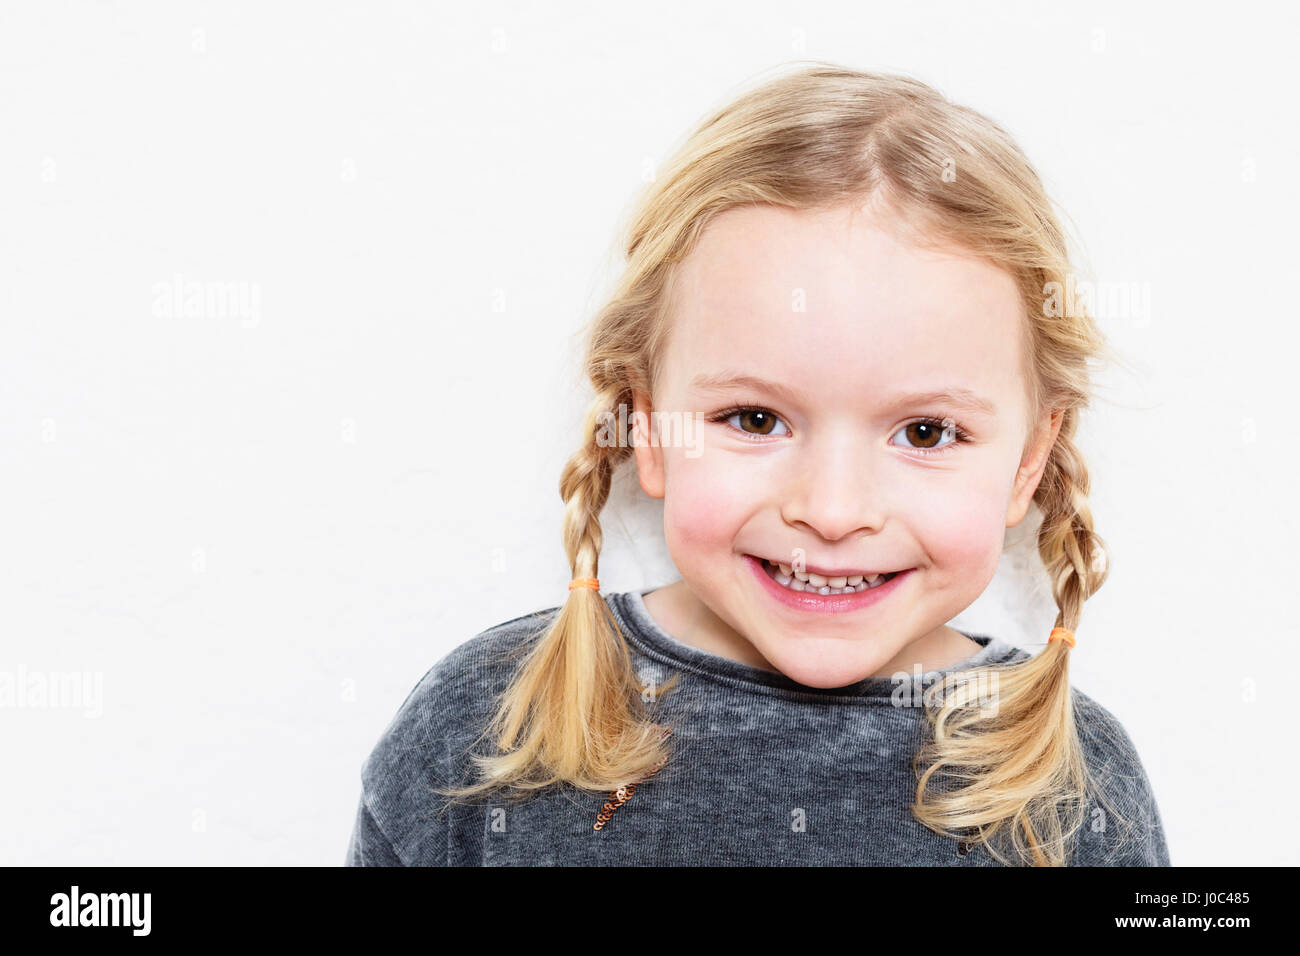 Ritratto di giovane ragazza sorridente, contro uno sfondo bianco Foto Stock